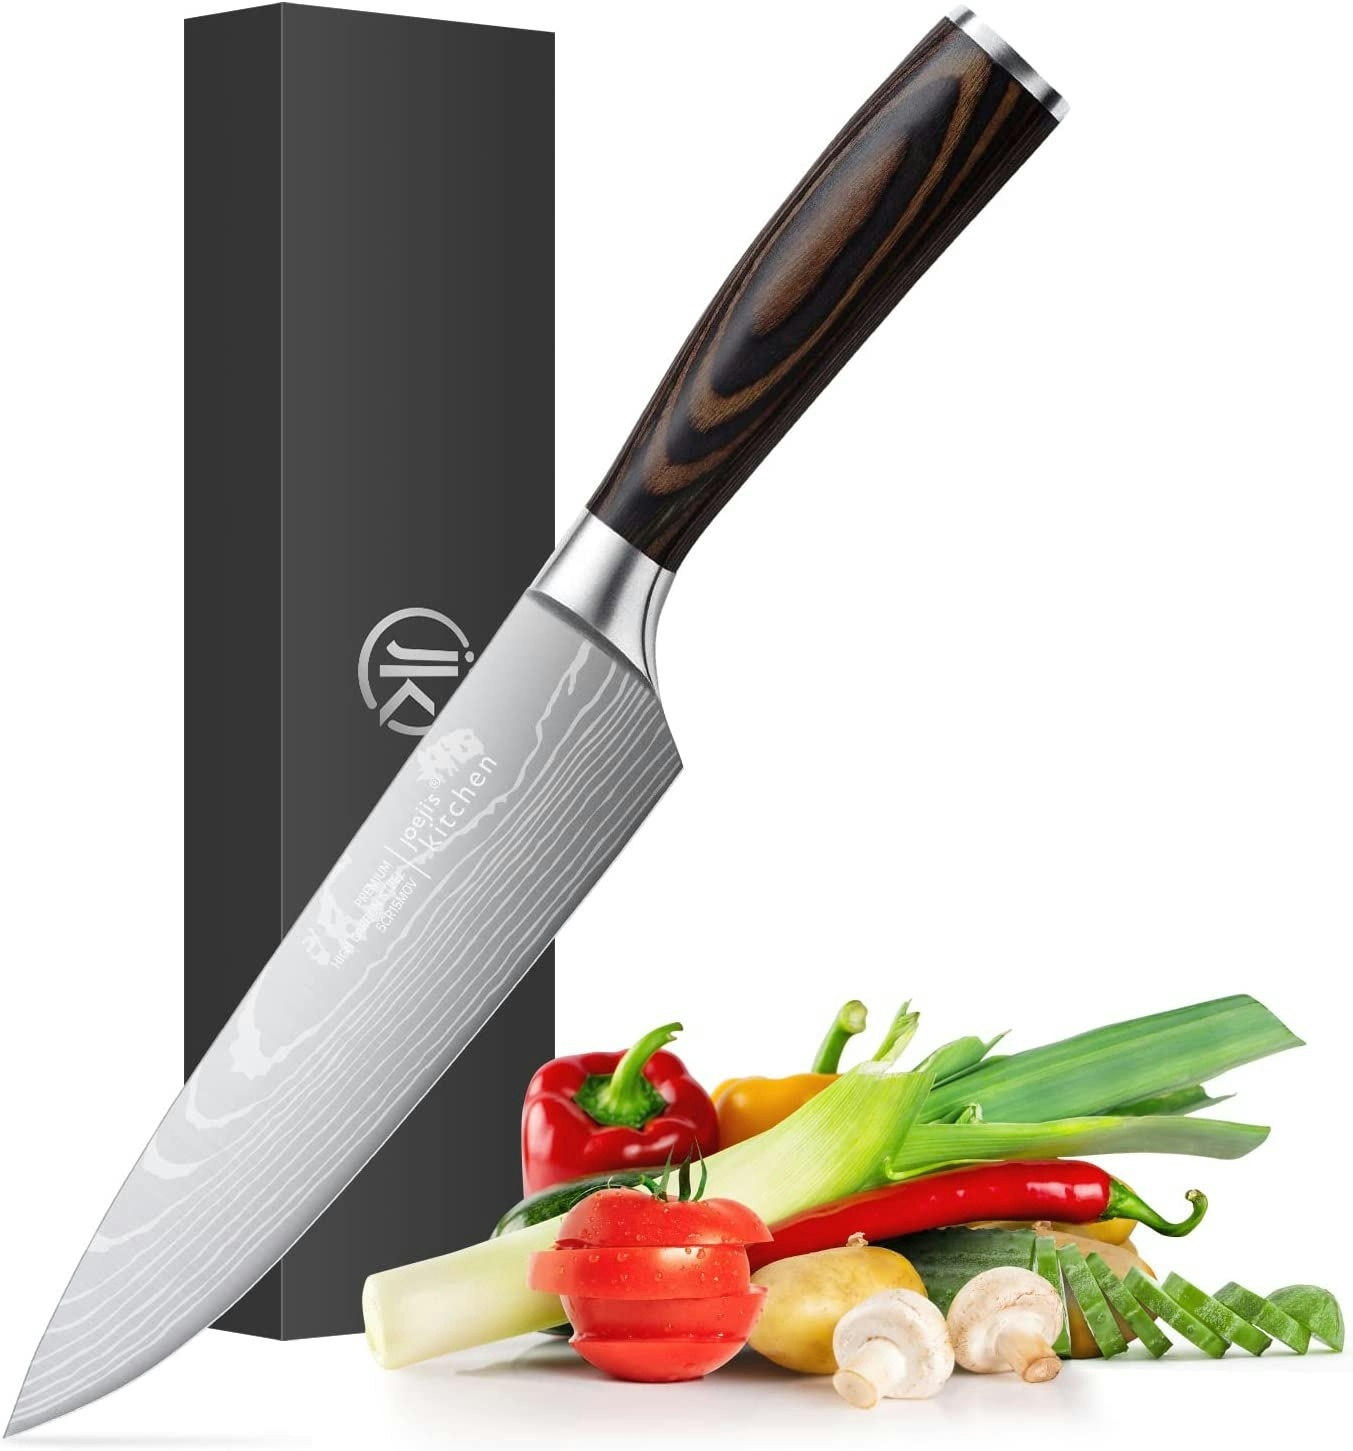 Joejis Kochmesser Profi Messer scharf aus rostfreiem Edelstahl mit ergonomischem Pakkaholzgriff als scharfes Küchenmesser scharf oder Fleischmesser